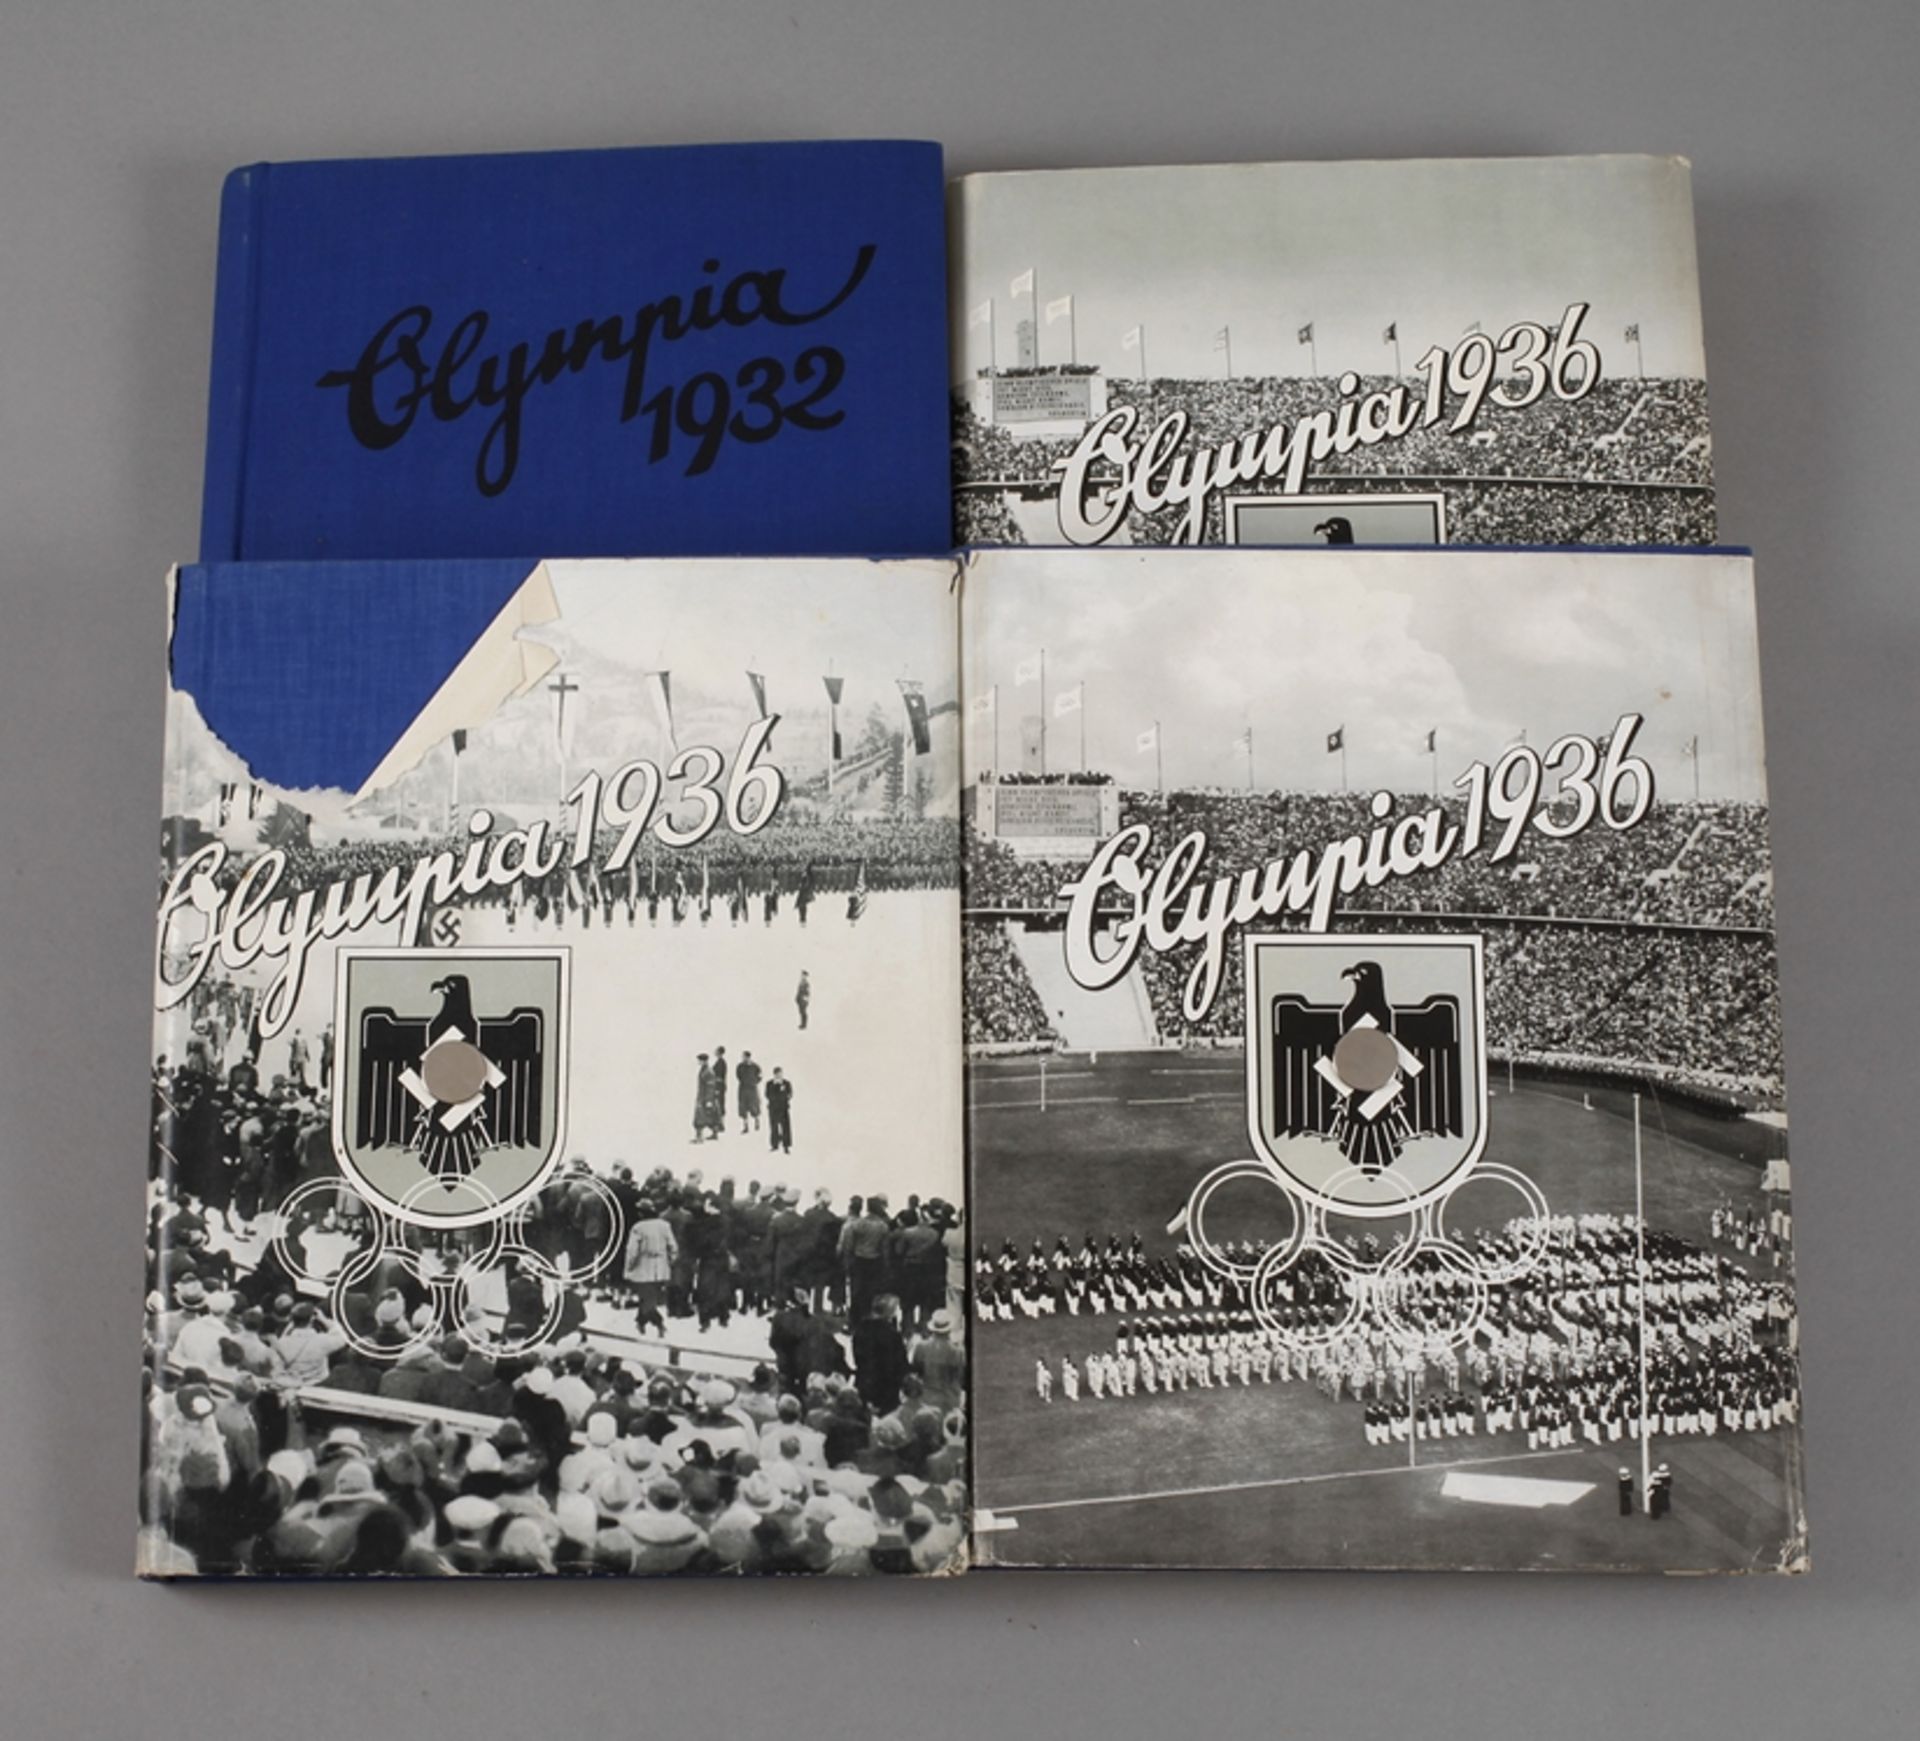 Zigarettensammelbilderalben Olympia 1936einmal Bd. I, zweimal Bd. II und einmal 1932, hrsg. vom